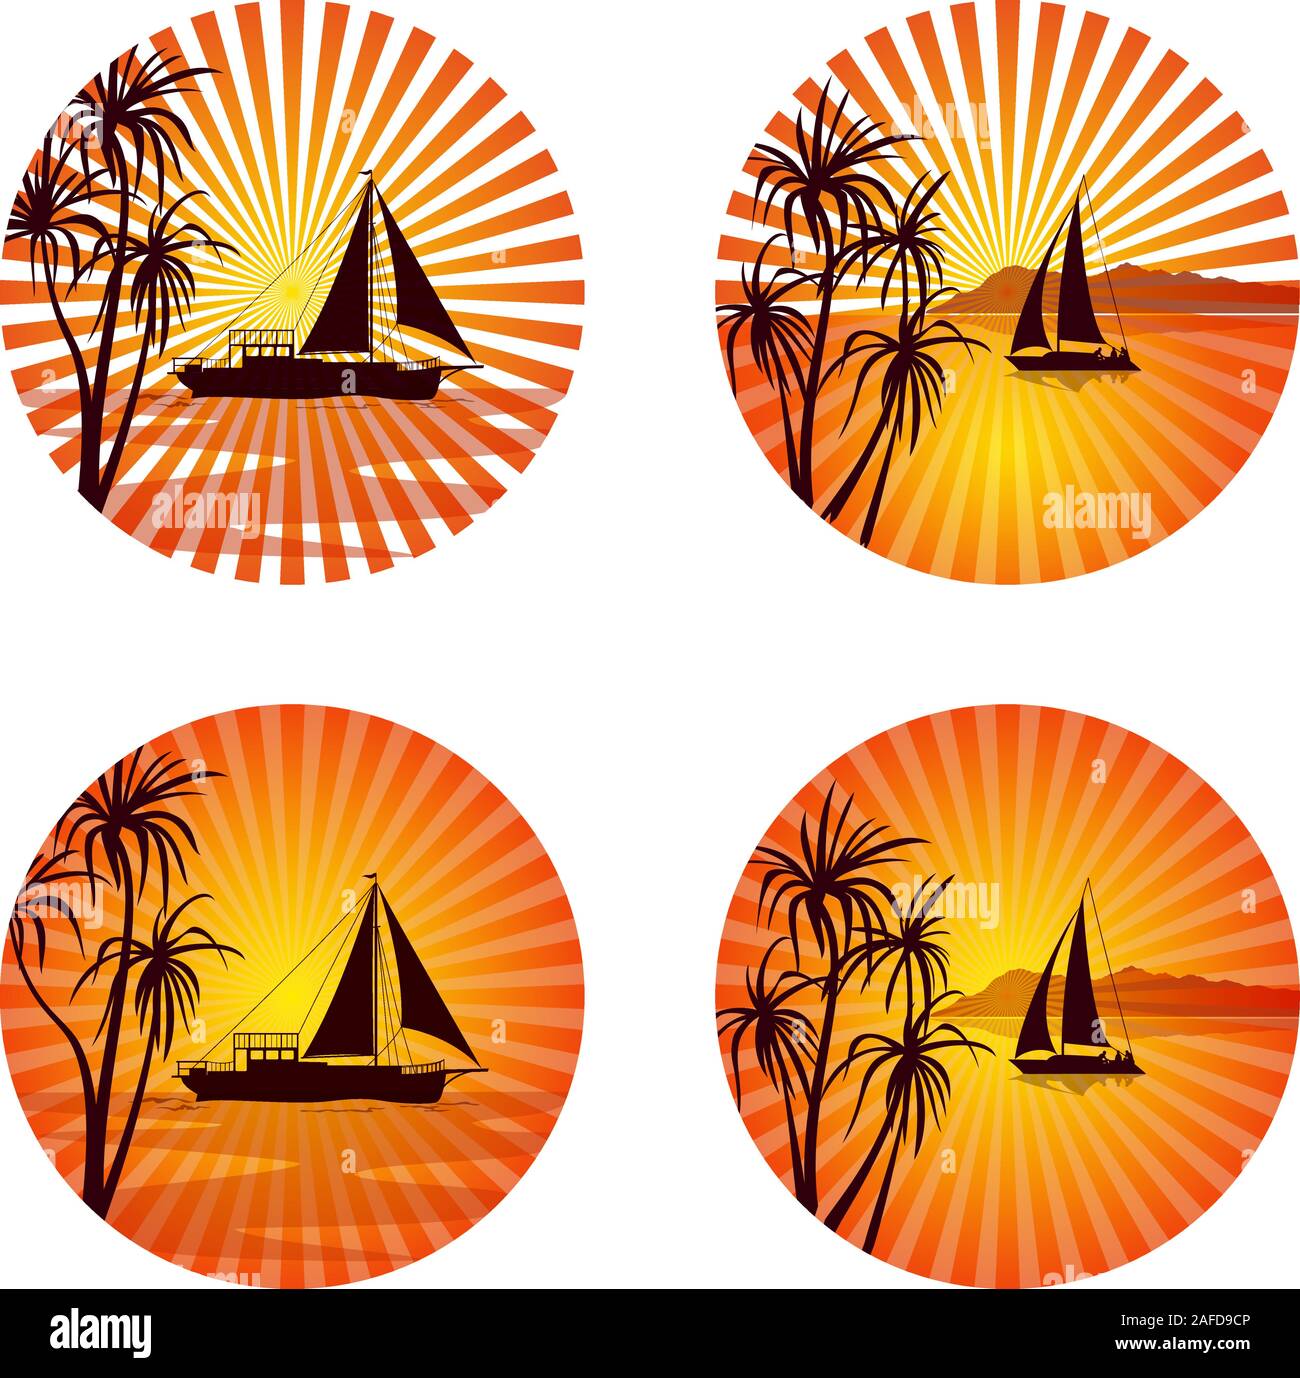 Symbole, Logo, Etiketten, tropischen Landschaft mit Schiffen und exotischen Palmen Silhouetten auf Kreis Hintergrund mit Orange und gelbe Sonne strahlen. Vektor Stock Vektor